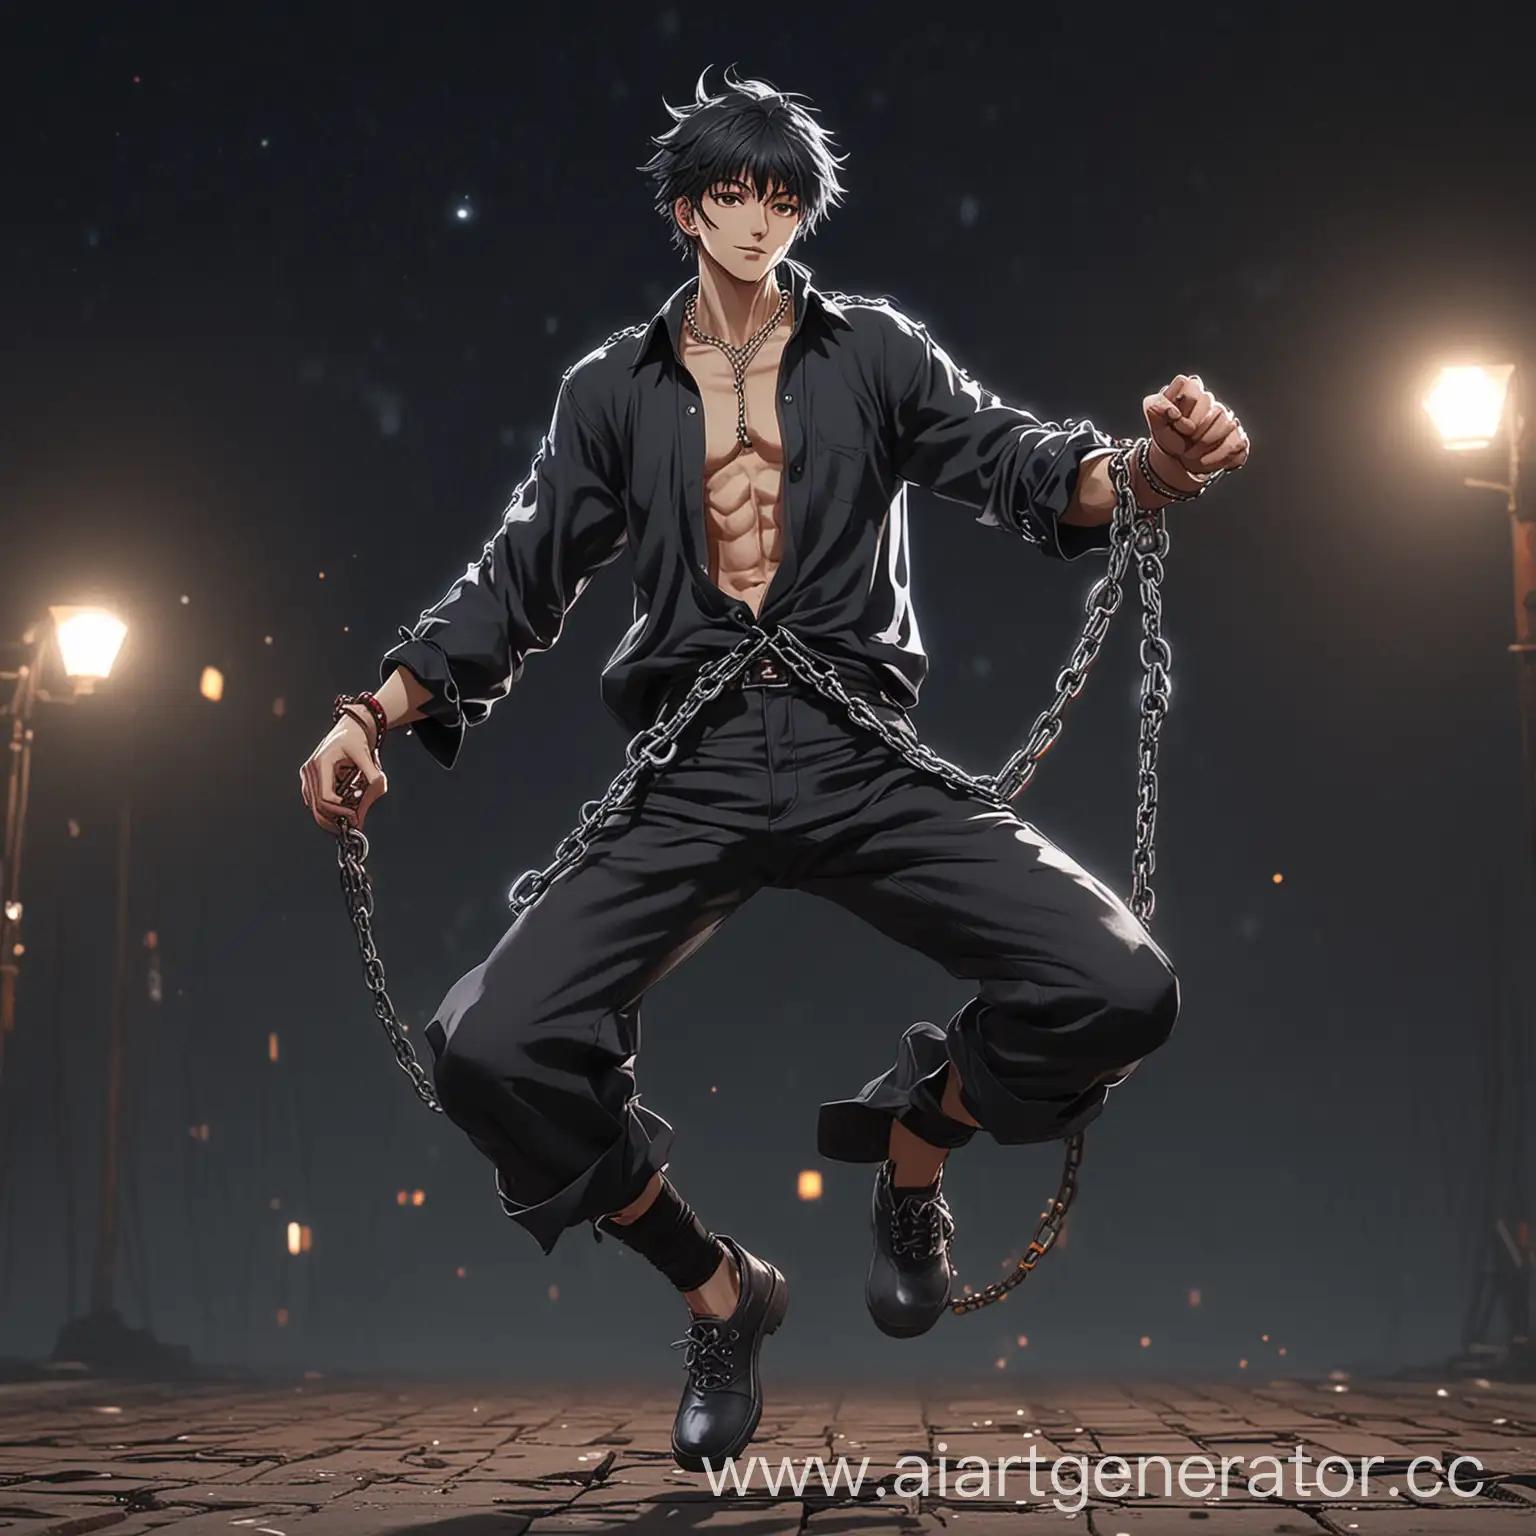 радостно энергично танцующий аниме персонаж в цепях мужского пола ночью в одежде 